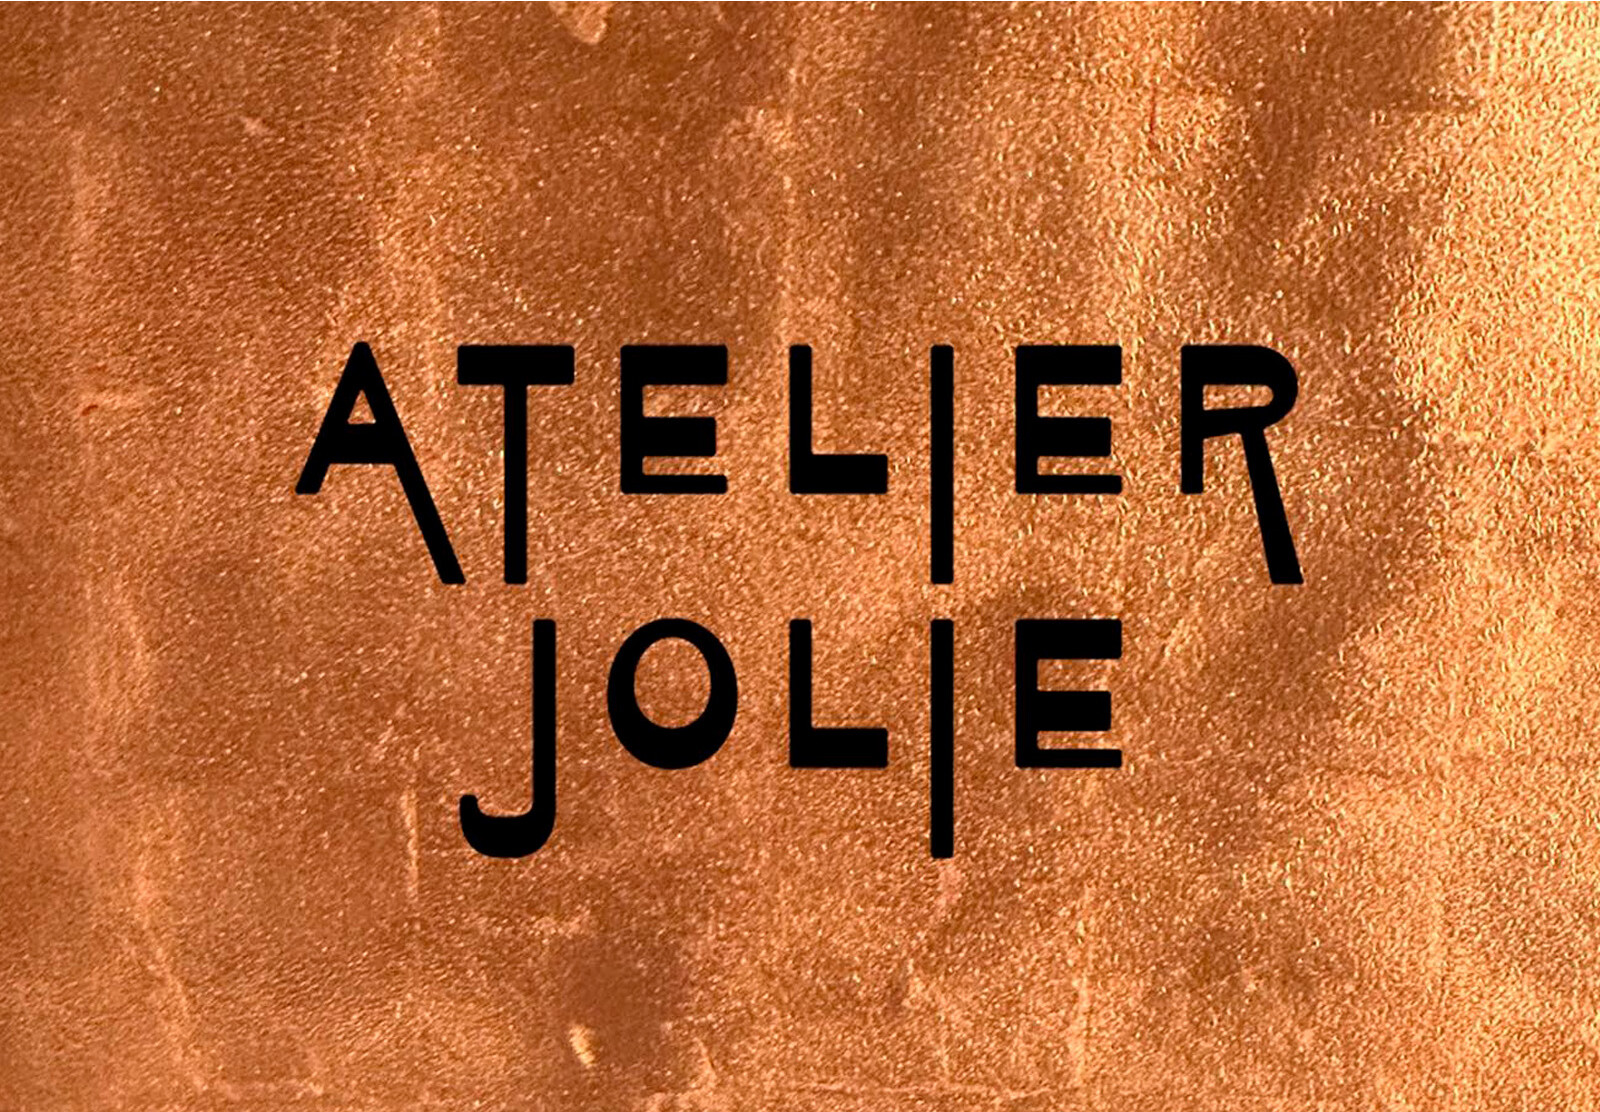 Анджелина Джоли запускает свой этичный бренд одежды Atelier Jolie